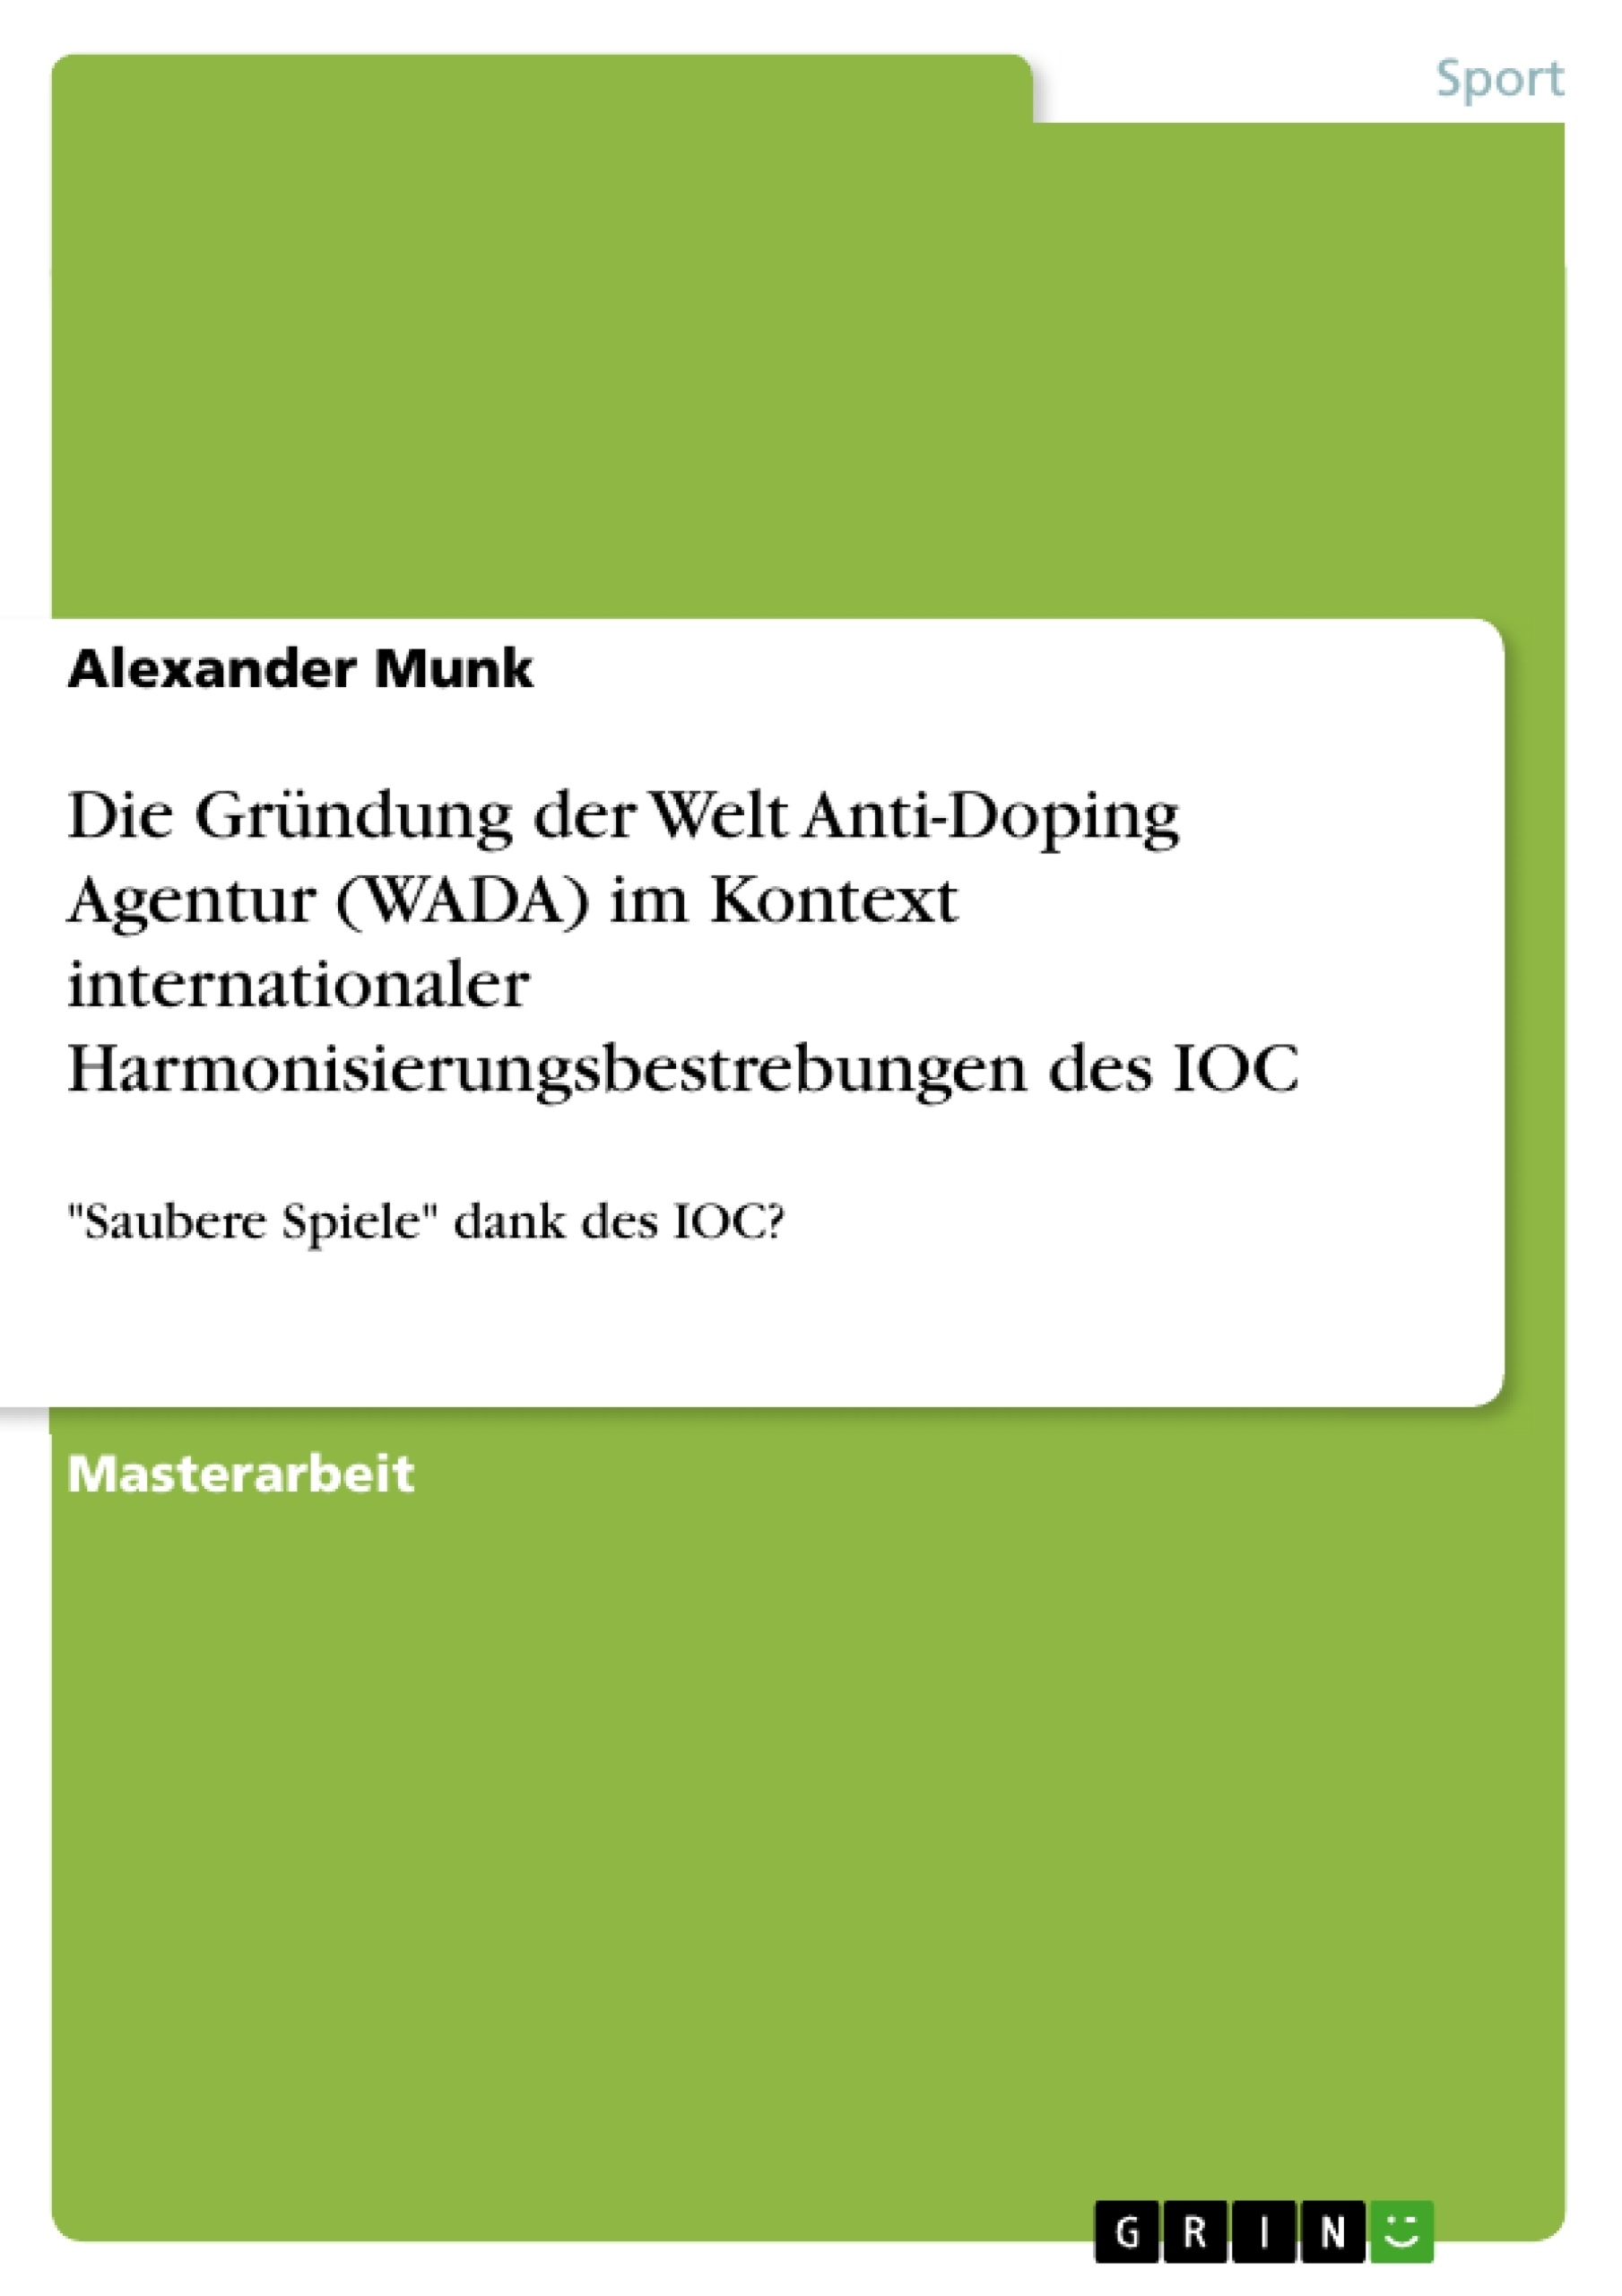 Title: Die Gründung der Welt Anti-Doping Agentur (WADA) im Kontext internationaler Harmonisierungsbestrebungen des IOC